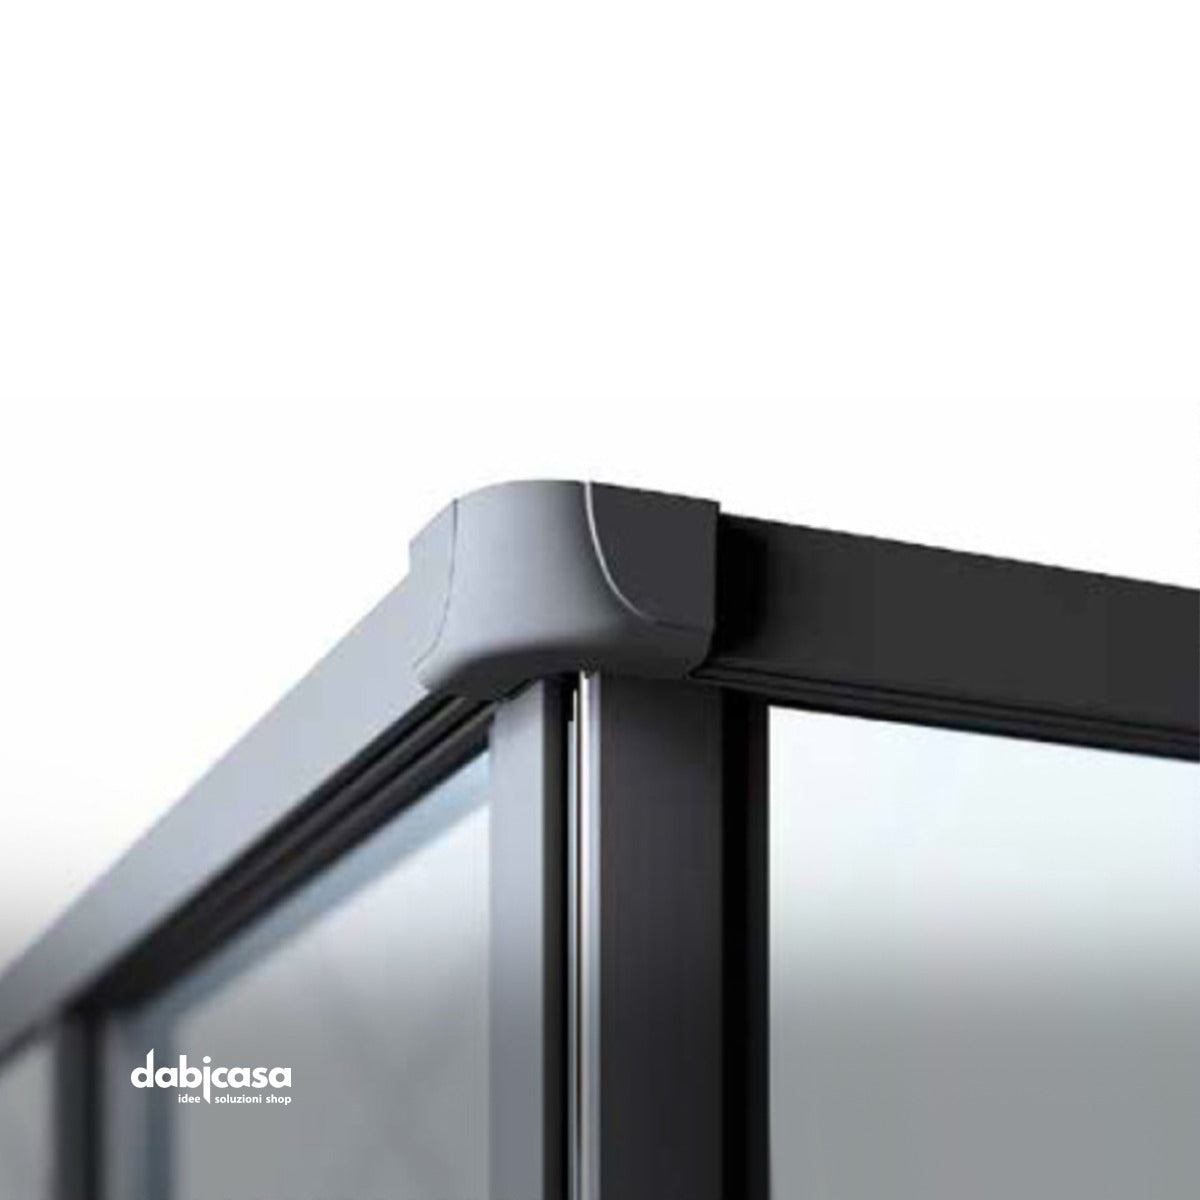 Box doccia "New Smeralda" angolare 80x100 in alluminio e pannello in vetro con profili nero essenza freeshipping - Dabicasa